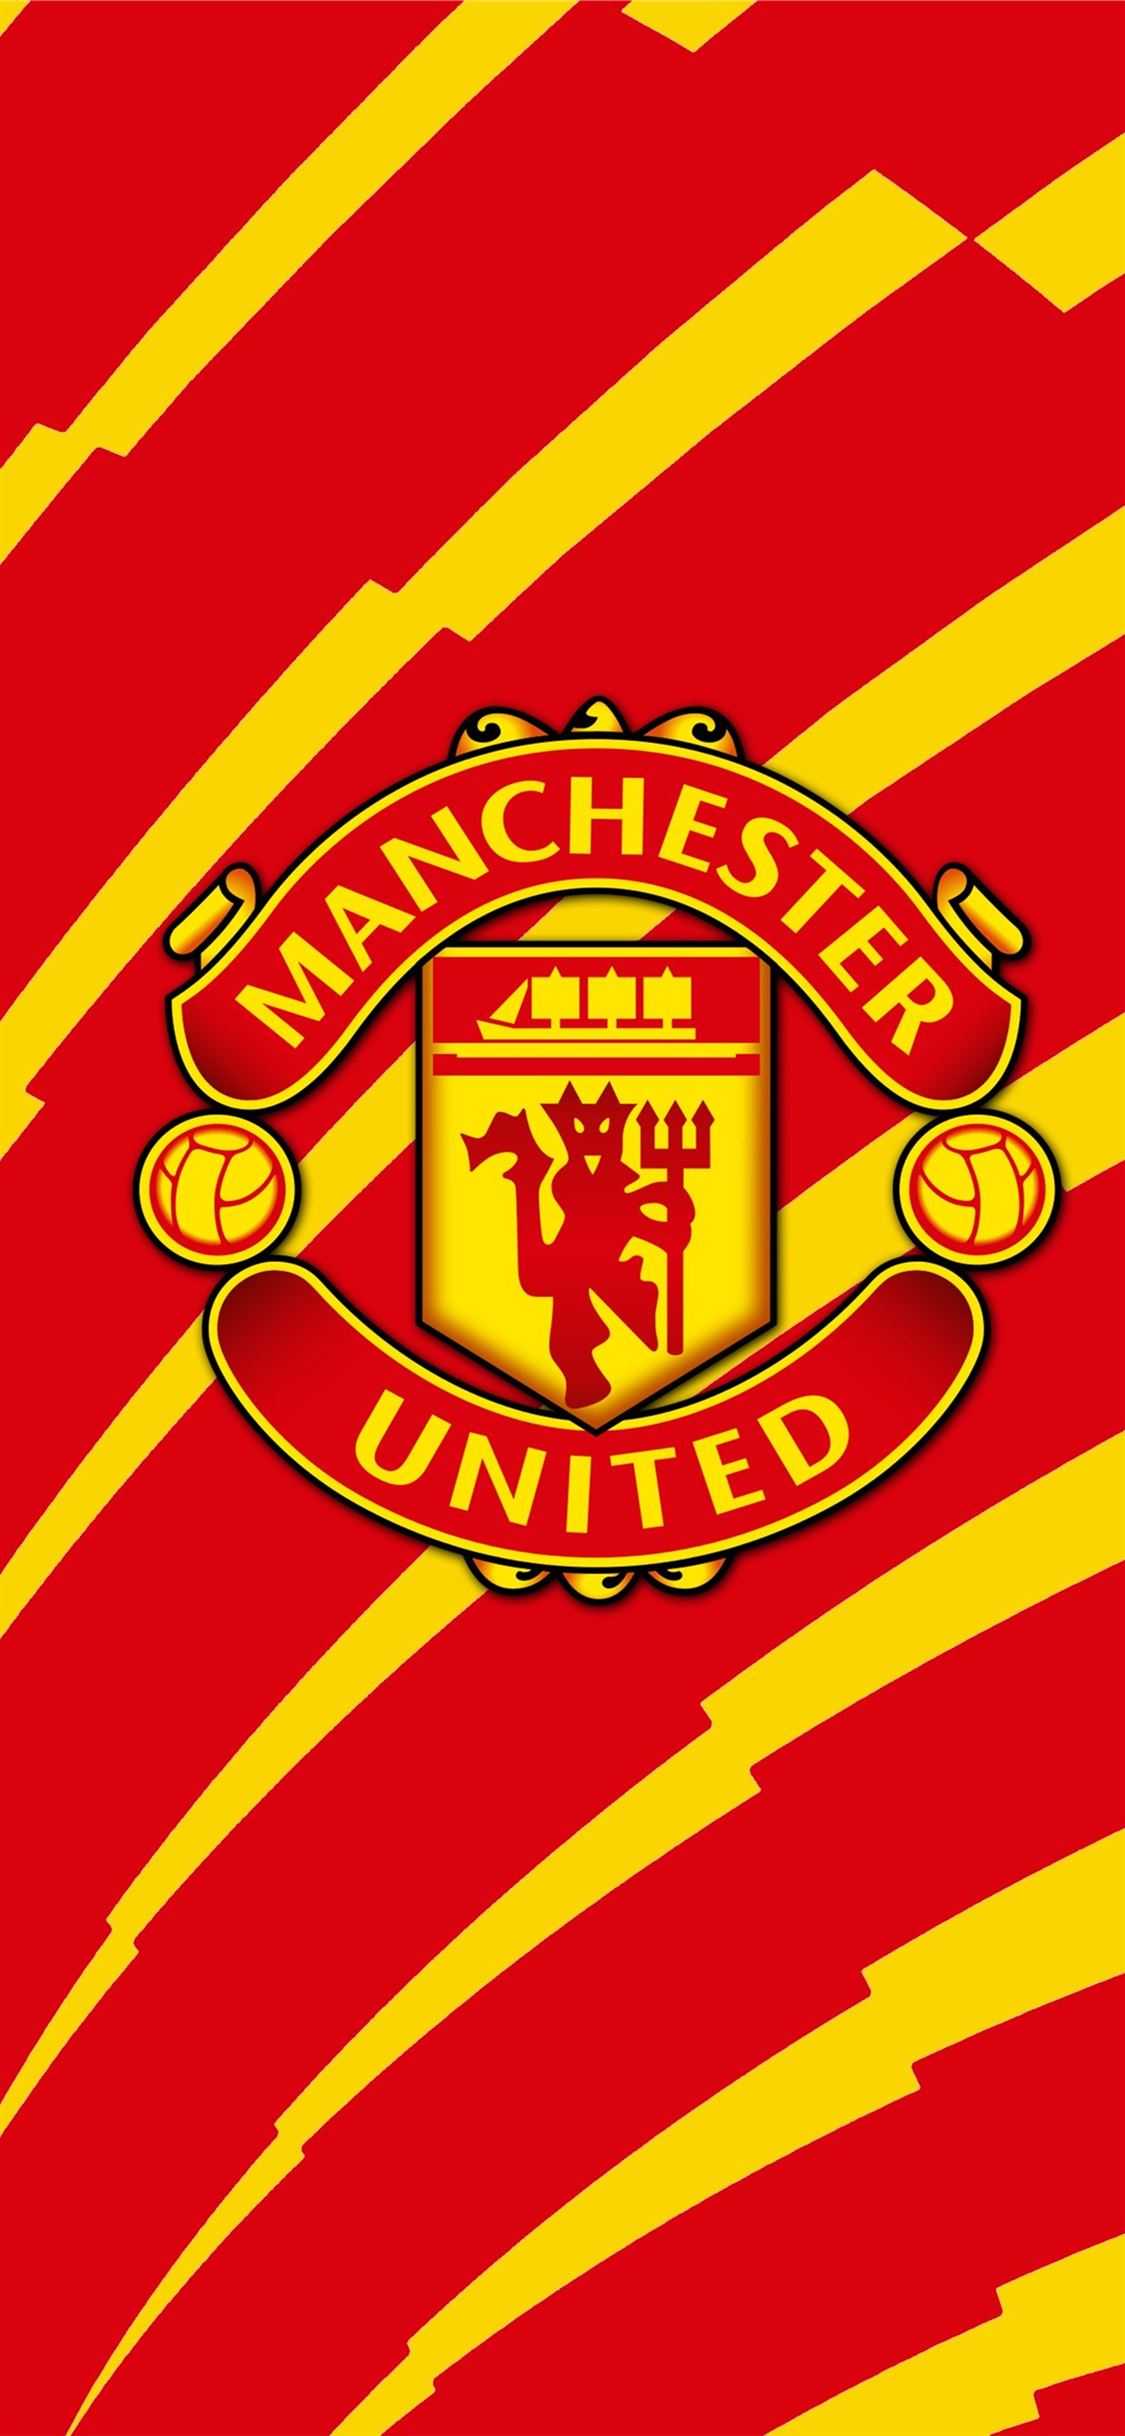 Hình dán sticker logo Manchester United hình dán decal Man Utd hình dán  bóng đá  Shopee Việt Nam